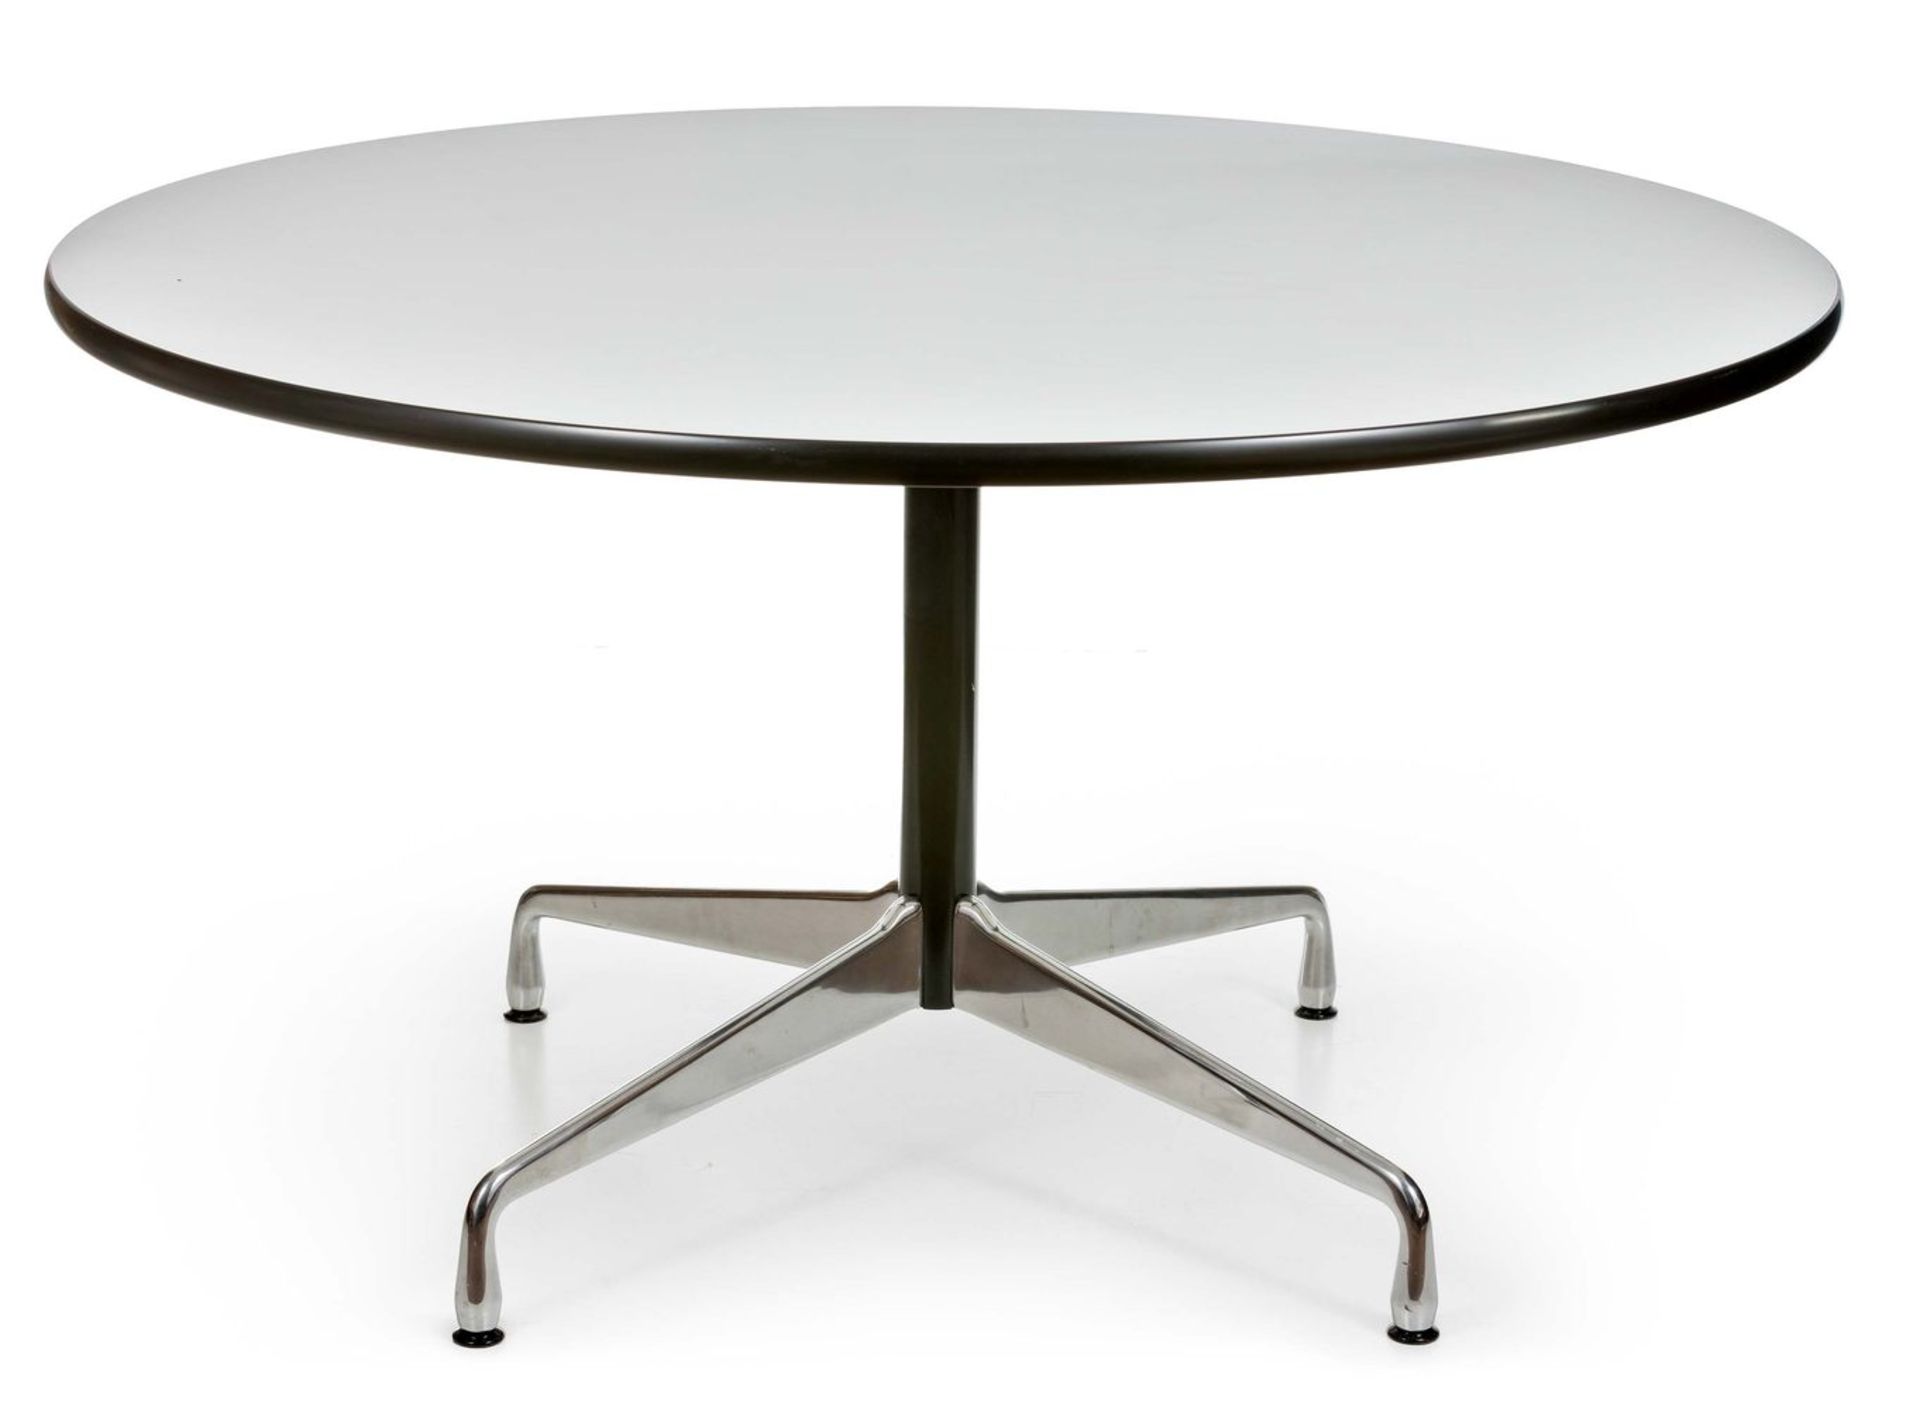 Vitra-Contract-Tablenach dem Entwurf von Charles und Ray Eames, um 1950Runde weiße Platte mit HPL-